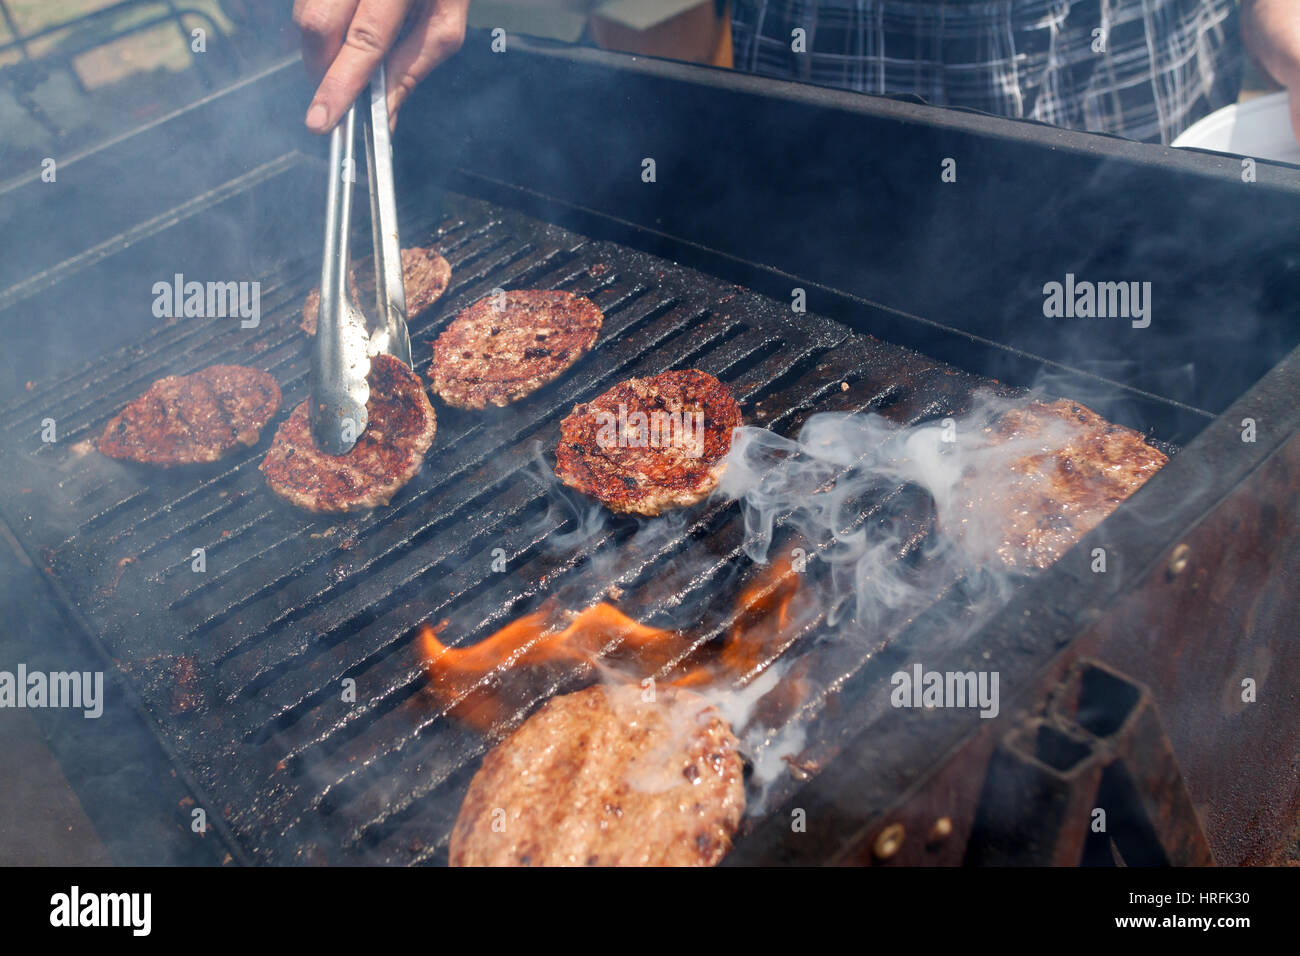 La viande de porc ou de boeuf cuit sur le feu, d'un barbecue pour les hamburgers Banque D'Images